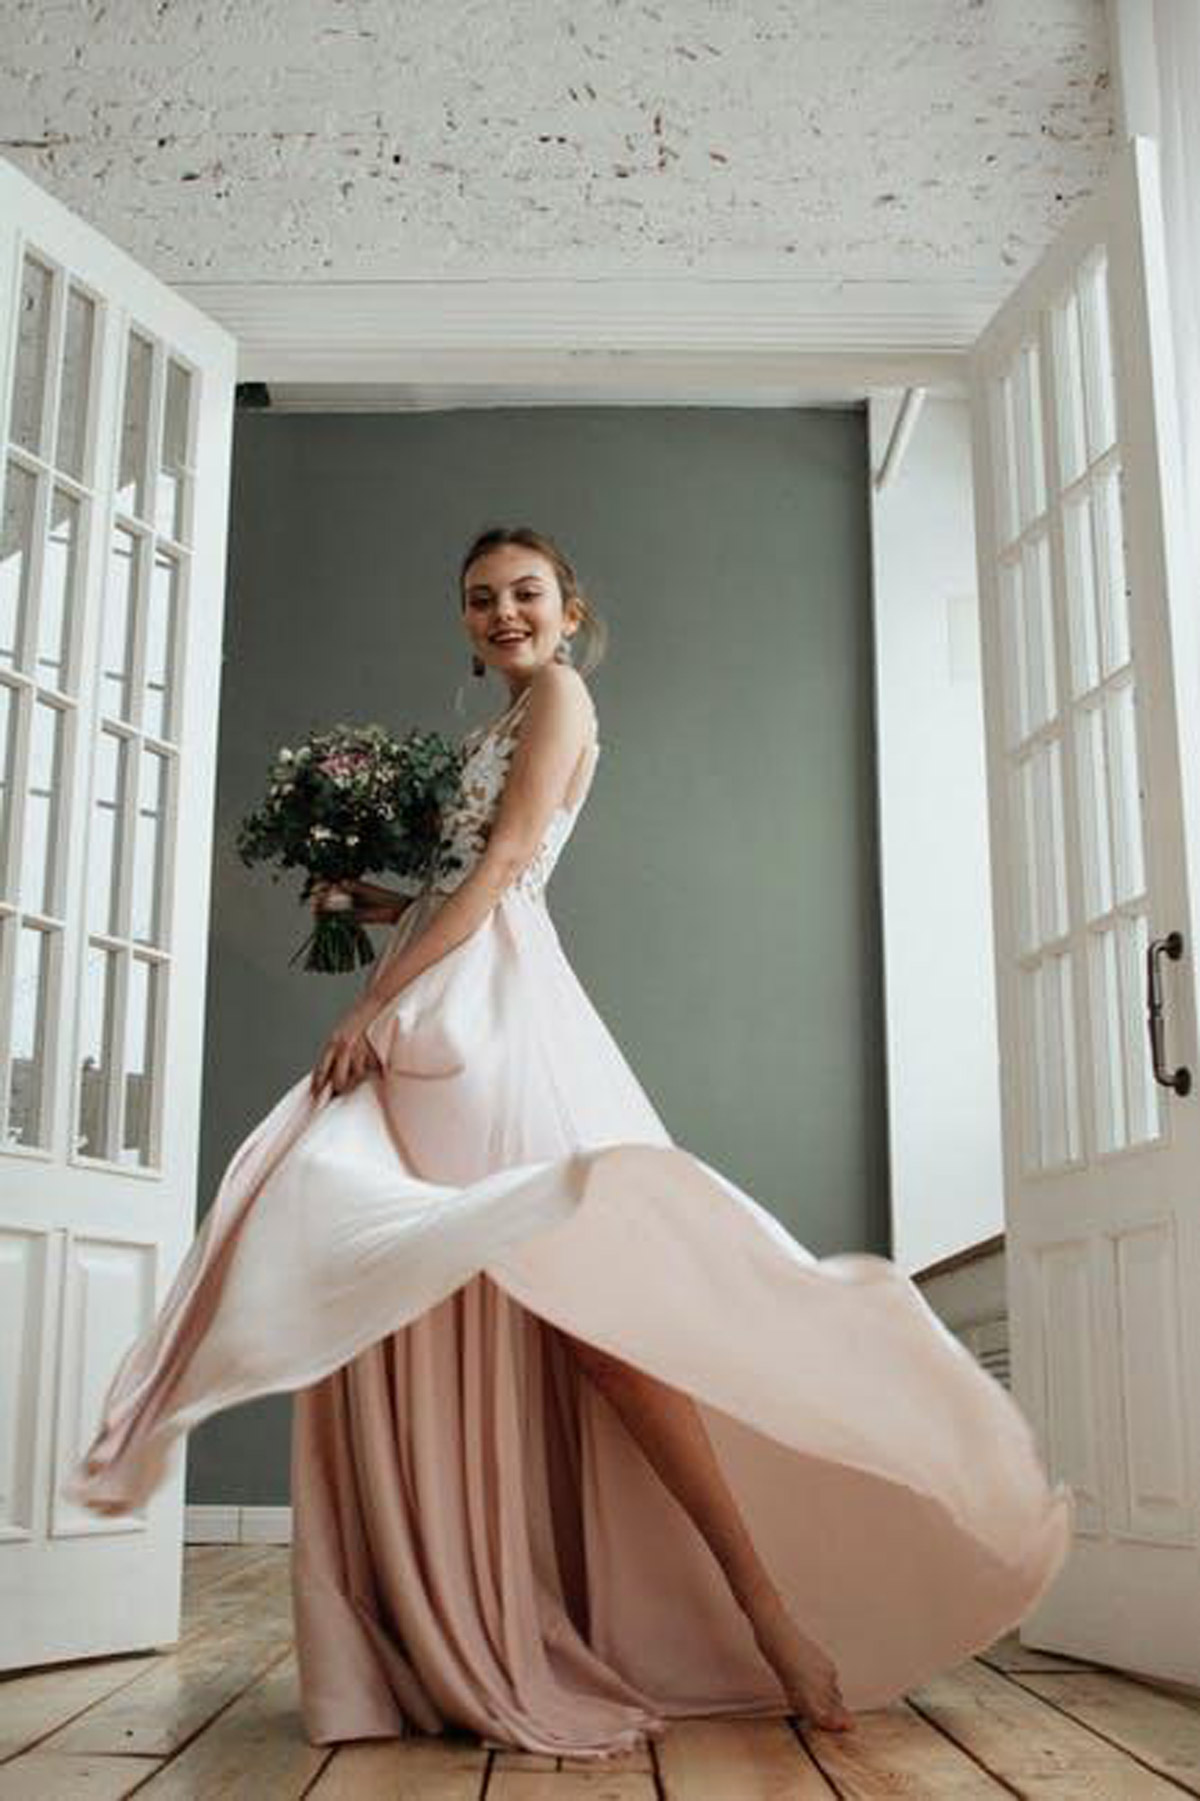 Stunning Yet Functional: Choosing An Ideal Wedding Dress